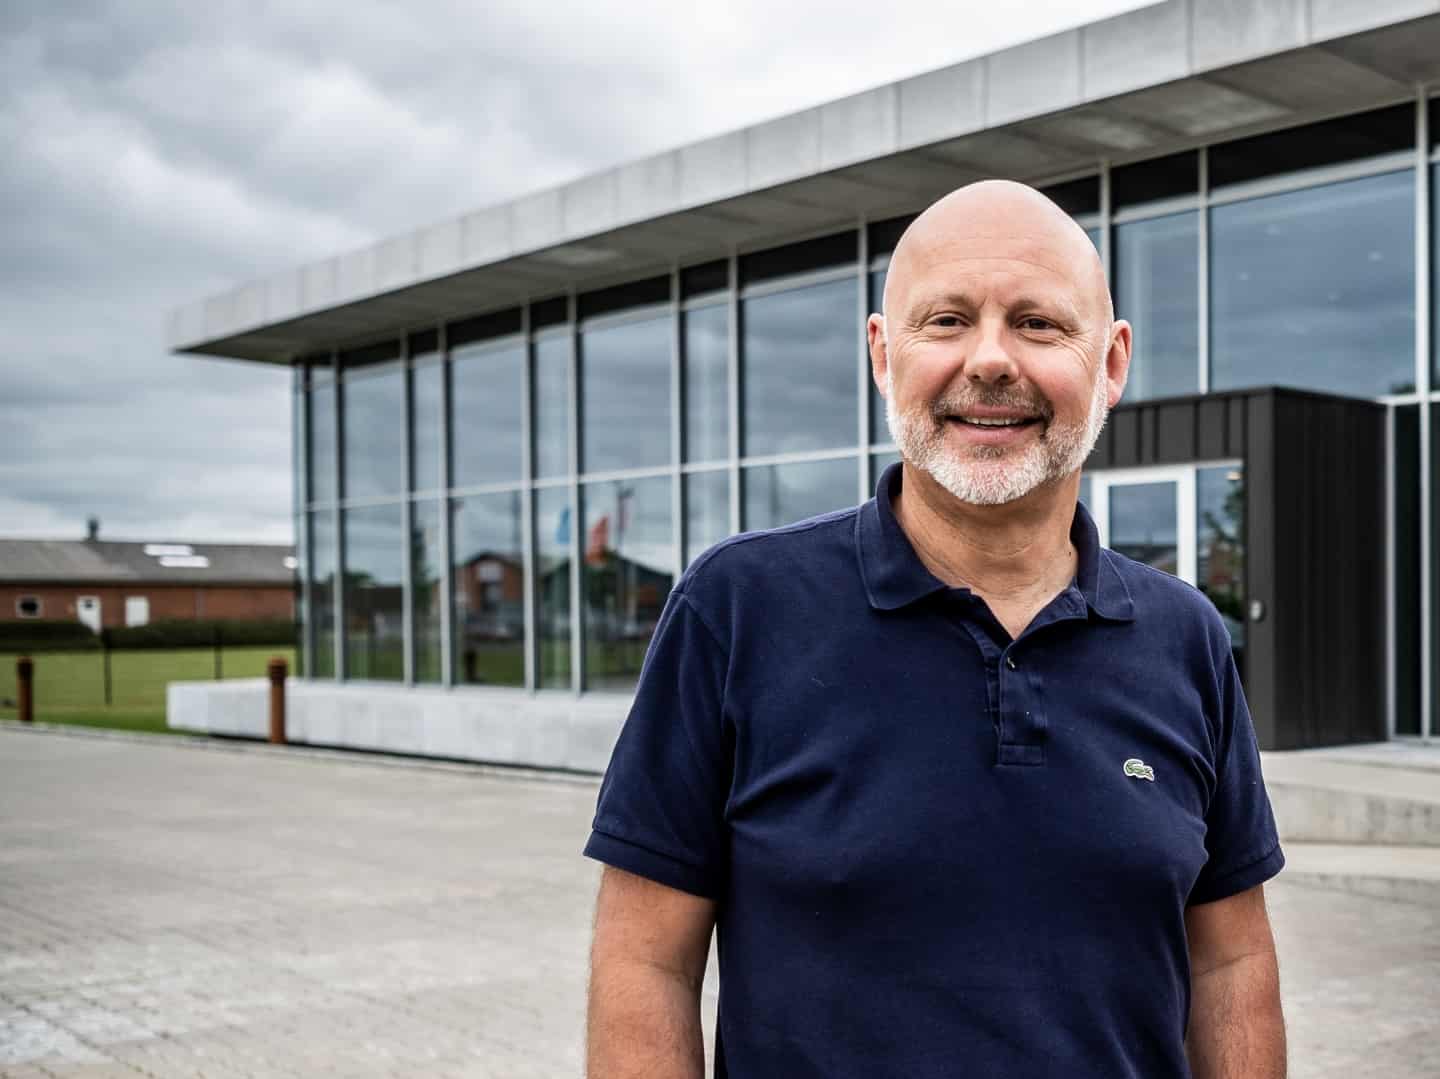 Fjerde generation tager over i stor Viborg-virksomhed | viborg-folkeblad.dk